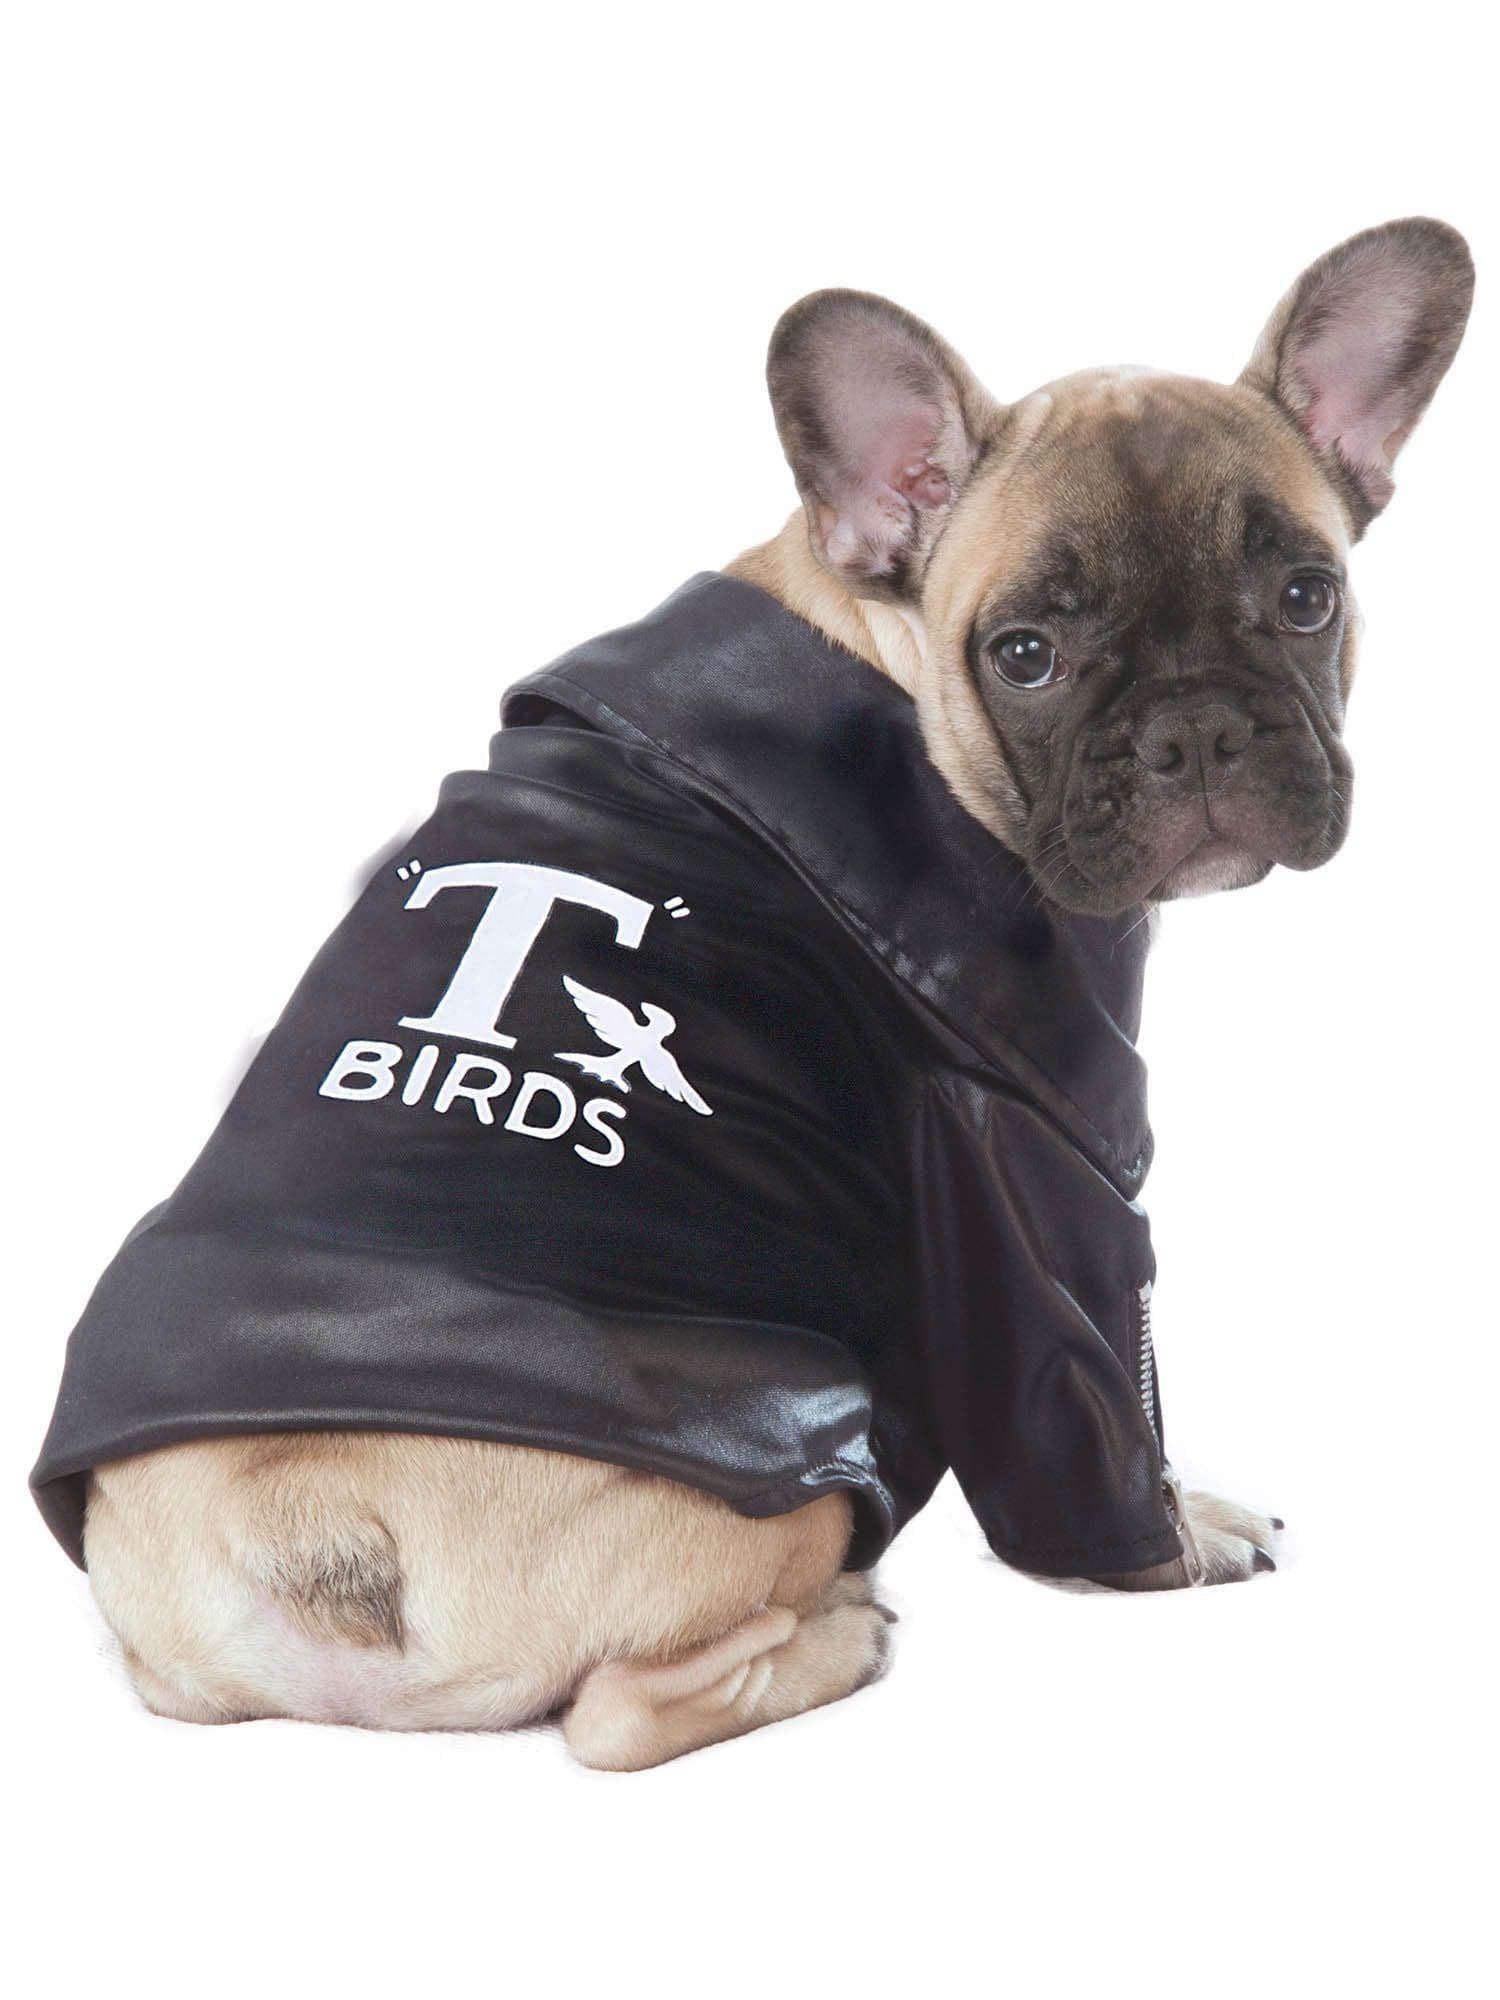 Grease T-Birds Pet Jacket - costumes.com